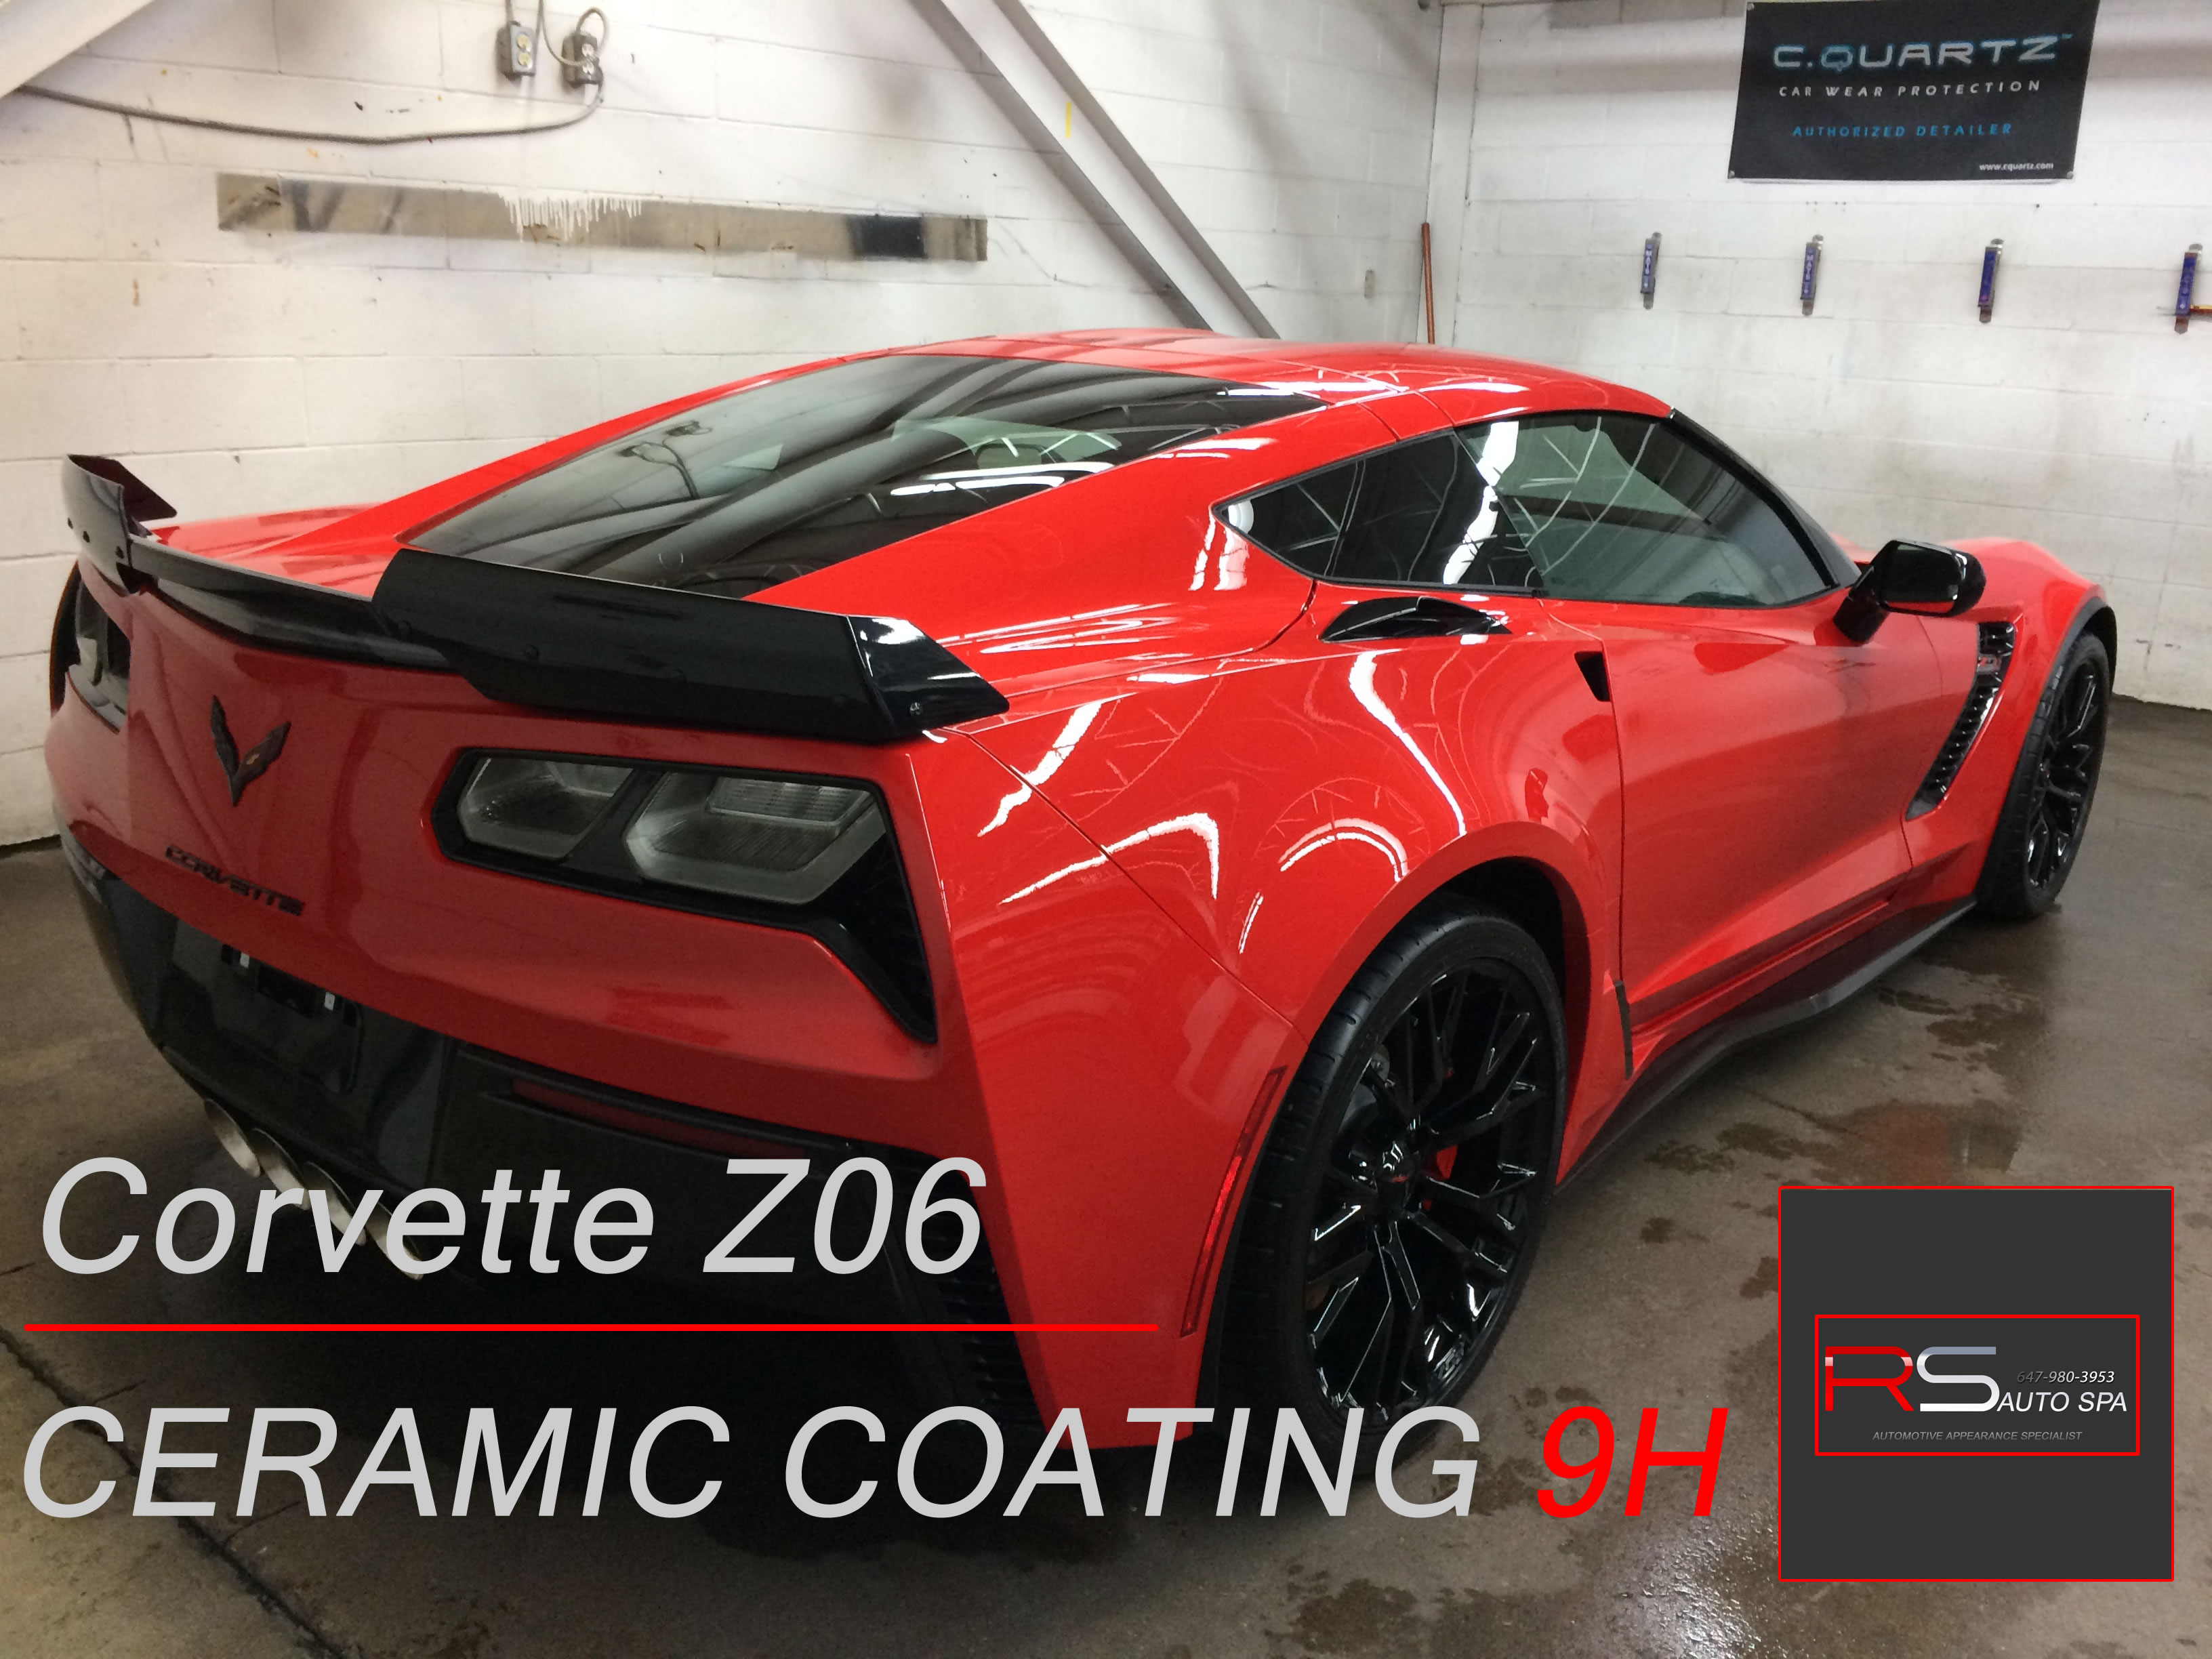 Corvette Z06 Ceramic Coating